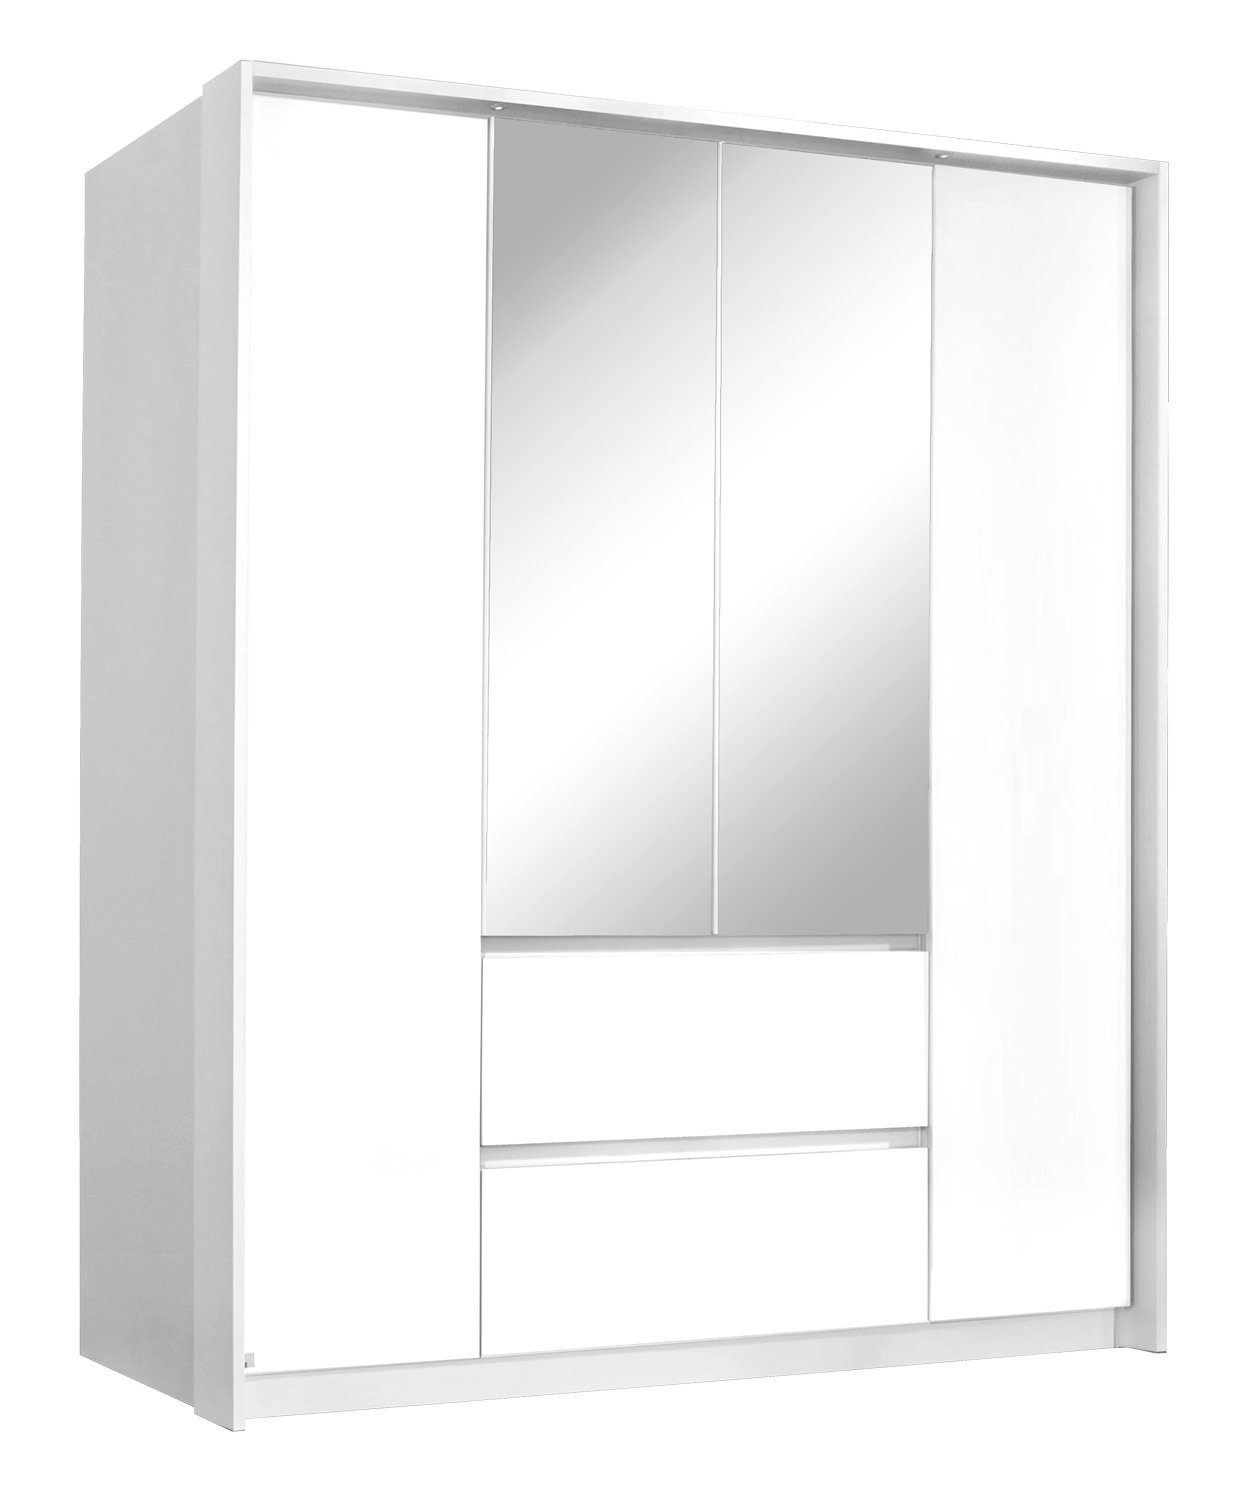 Alpinweiß, Kleiderschrank Spiegel 4 Türen, cm, B 181 H mit Schubladen, 197 2 NIDDA, Drehtürenschrank rauch x cm